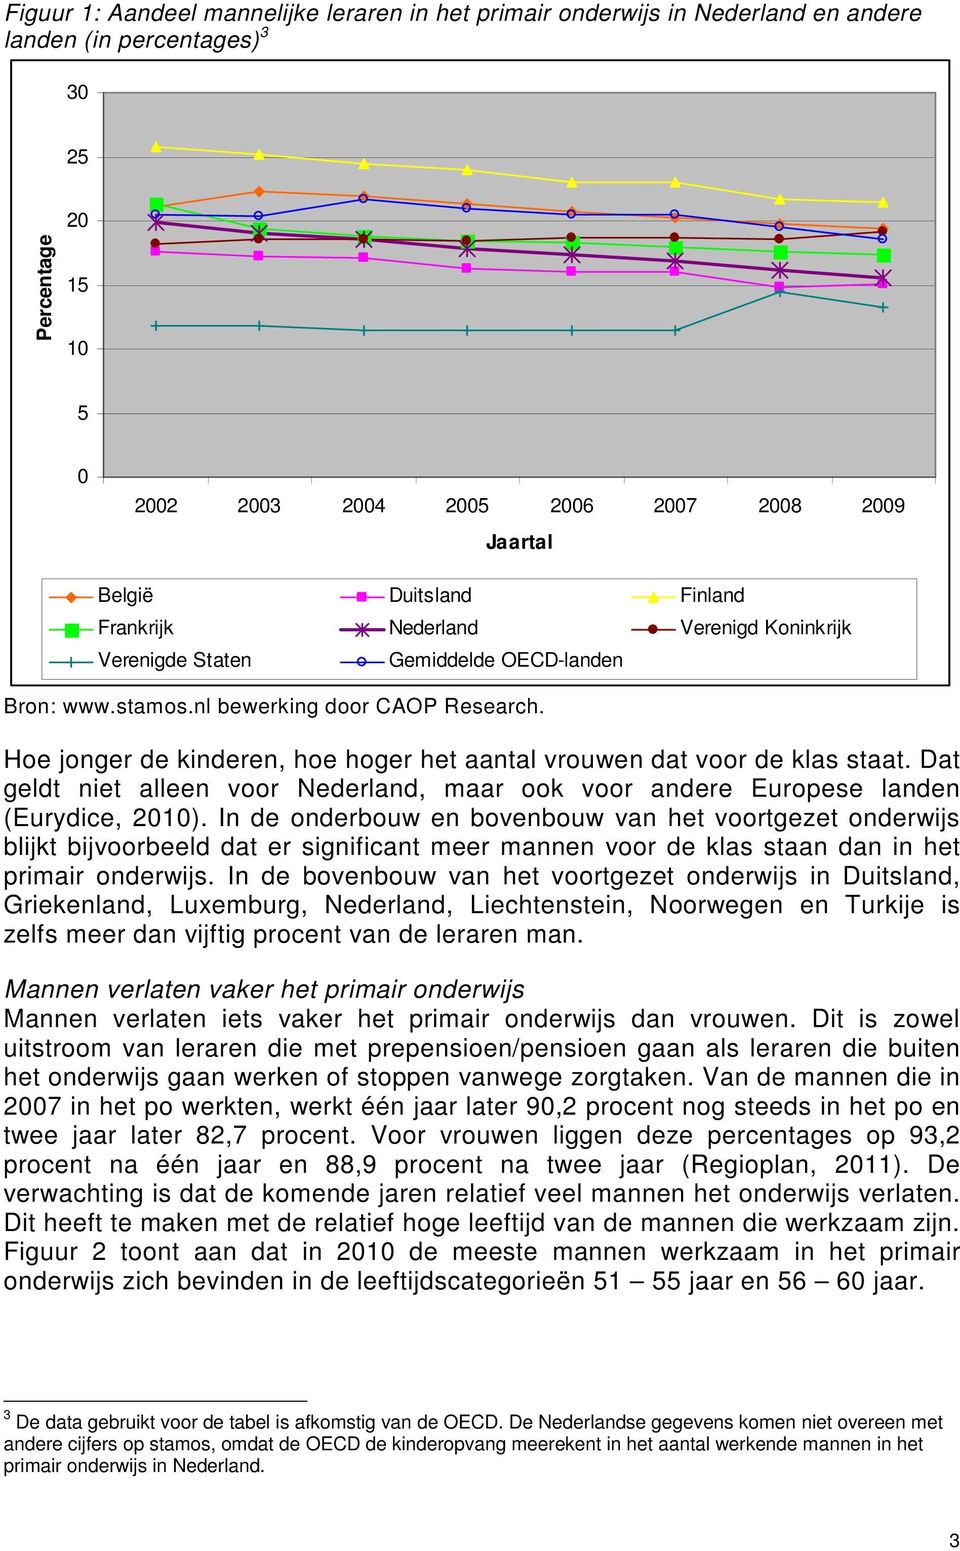 Hoe jonger de kinderen, hoe hoger het aantal vrouwen dat voor de klas staat. Dat geldt niet alleen voor Nederland, maar ook voor andere Europese landen (Eurydice, 2010).